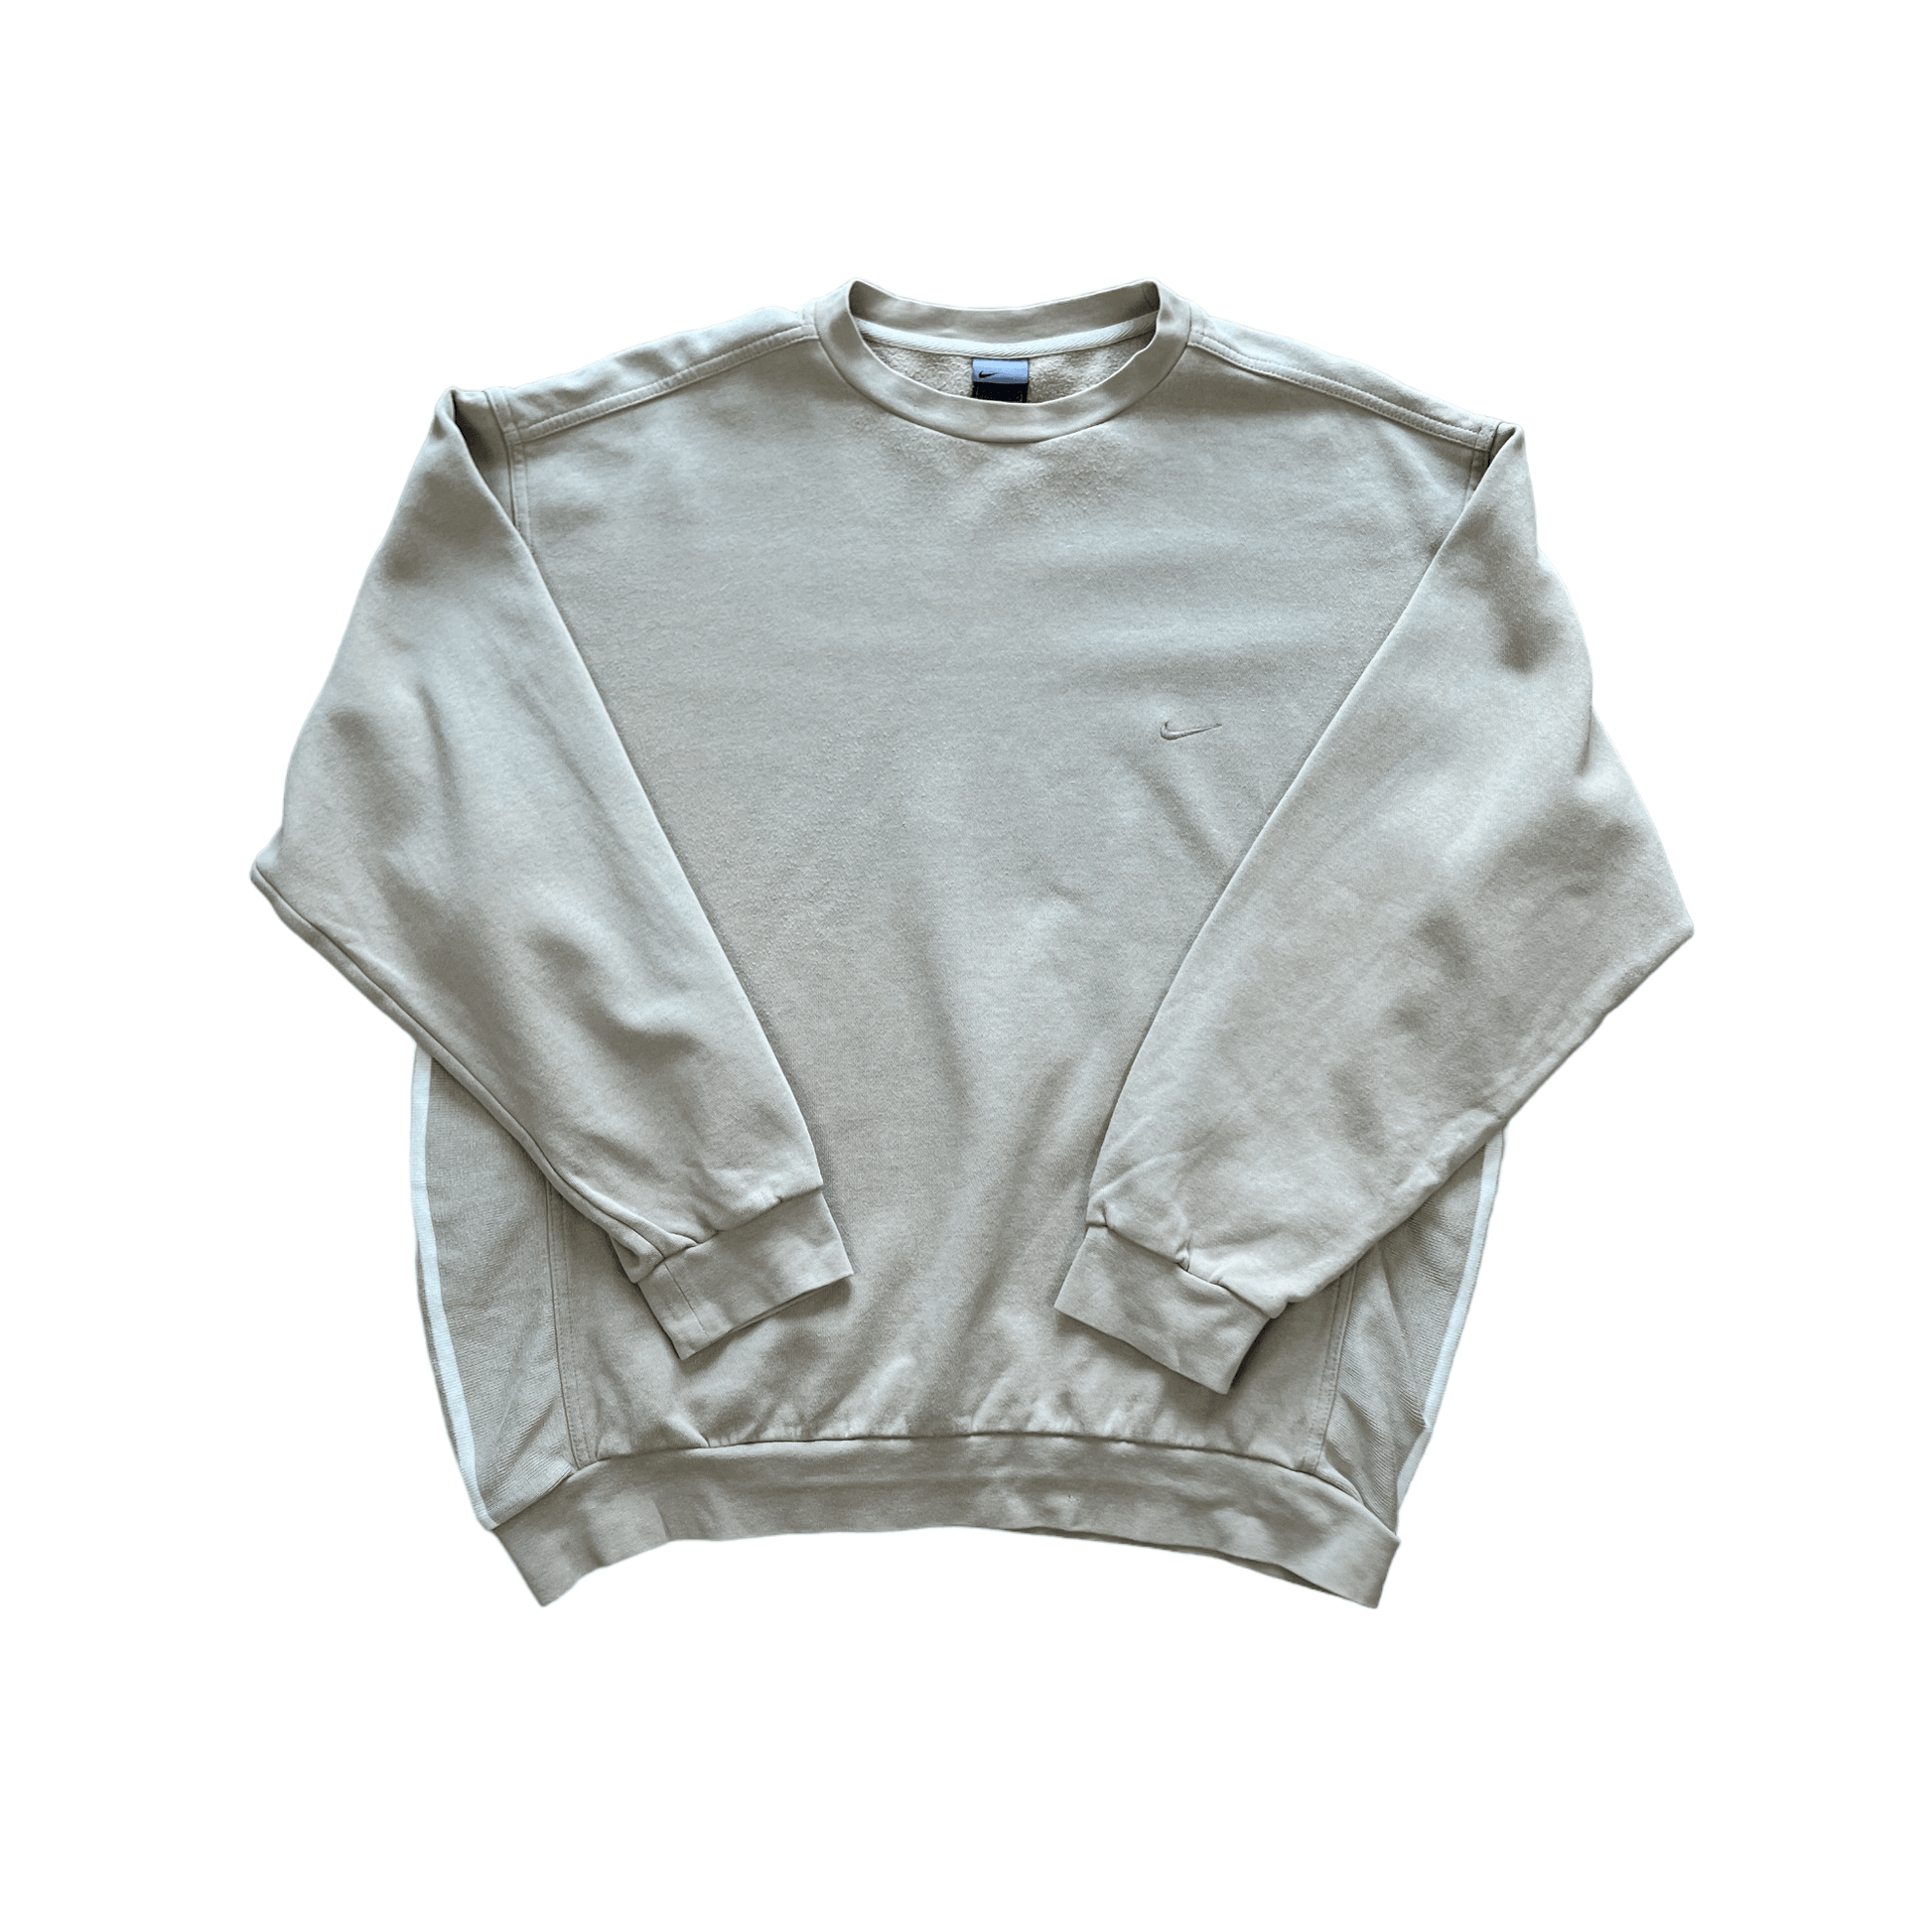 Vintage Beige Nike Sweatshirt - Extra Large - The Streetwear Studio